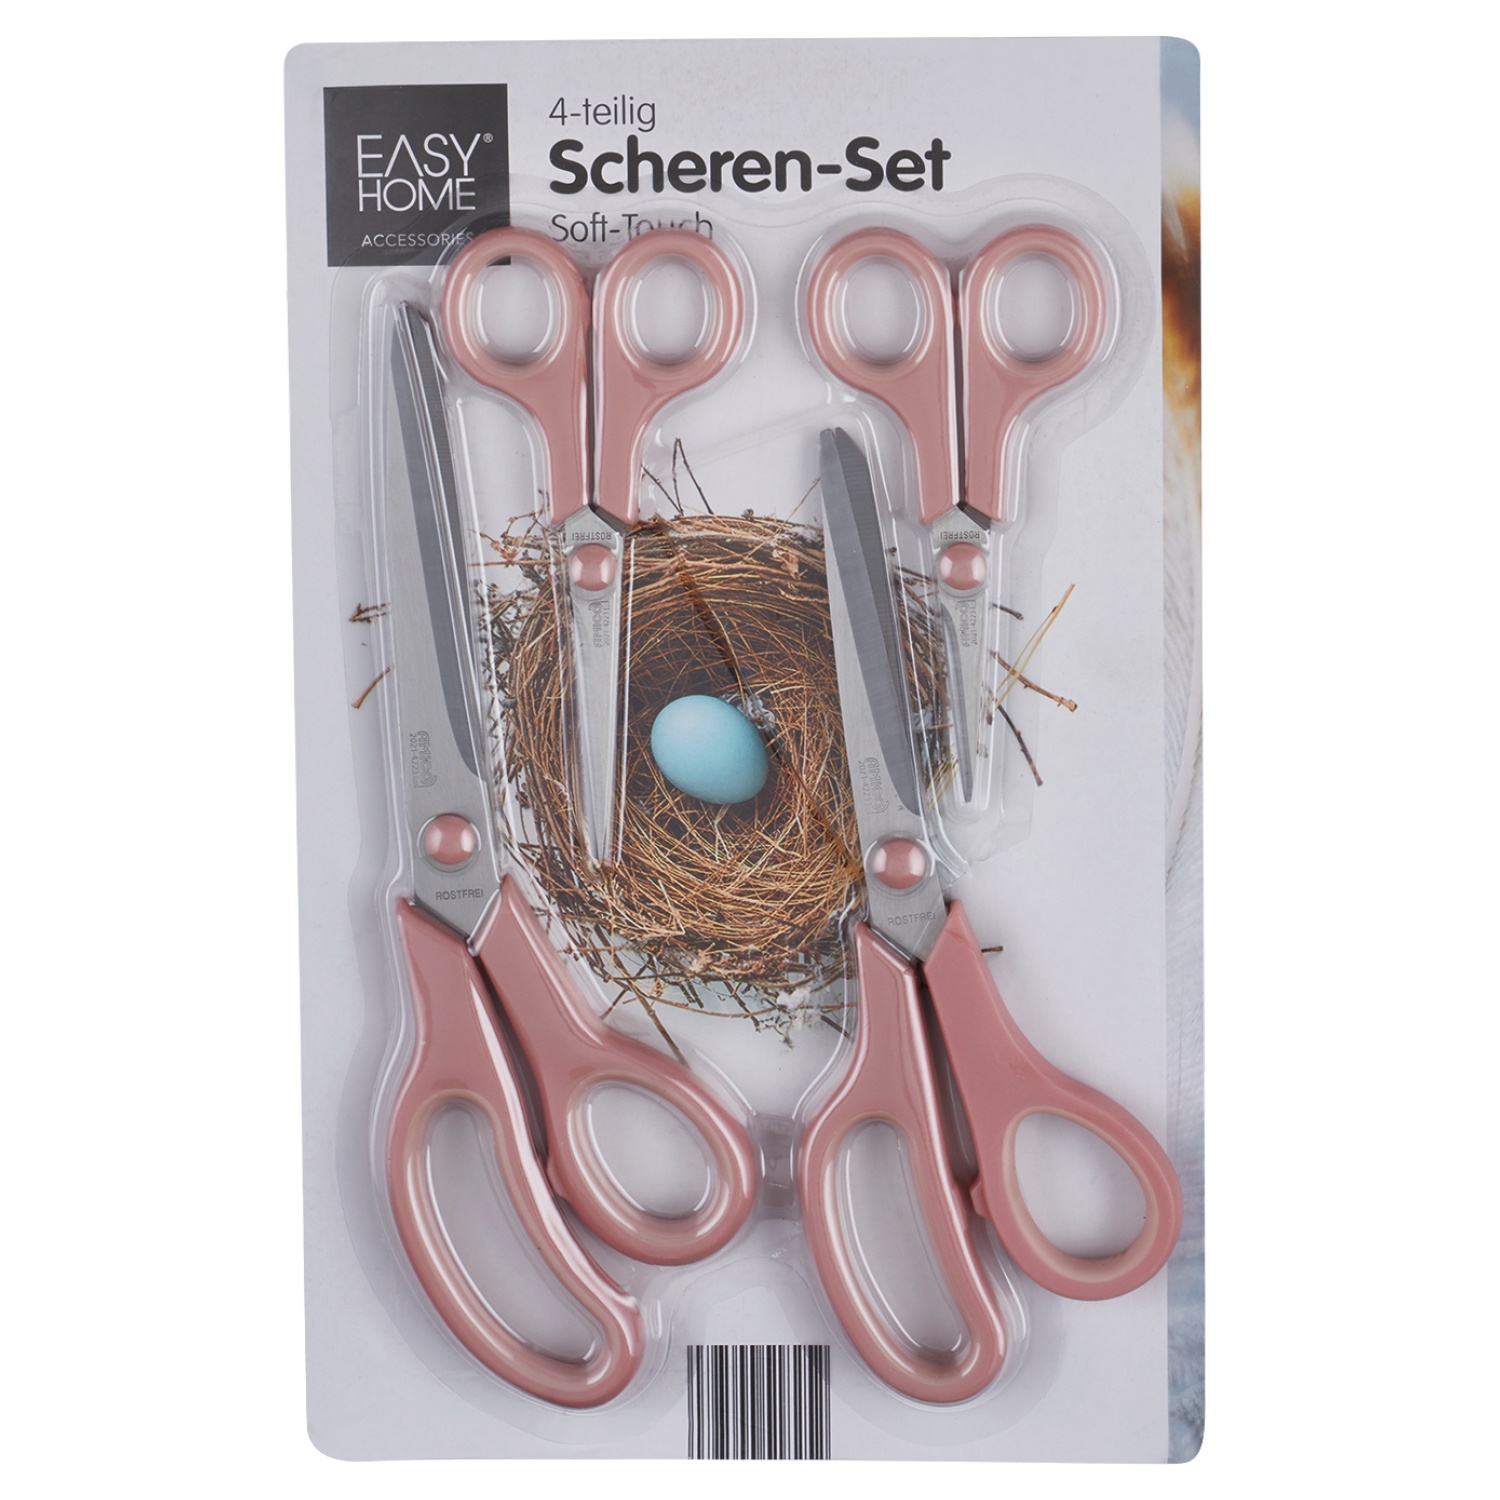 EASY HOME® Scheren-Set